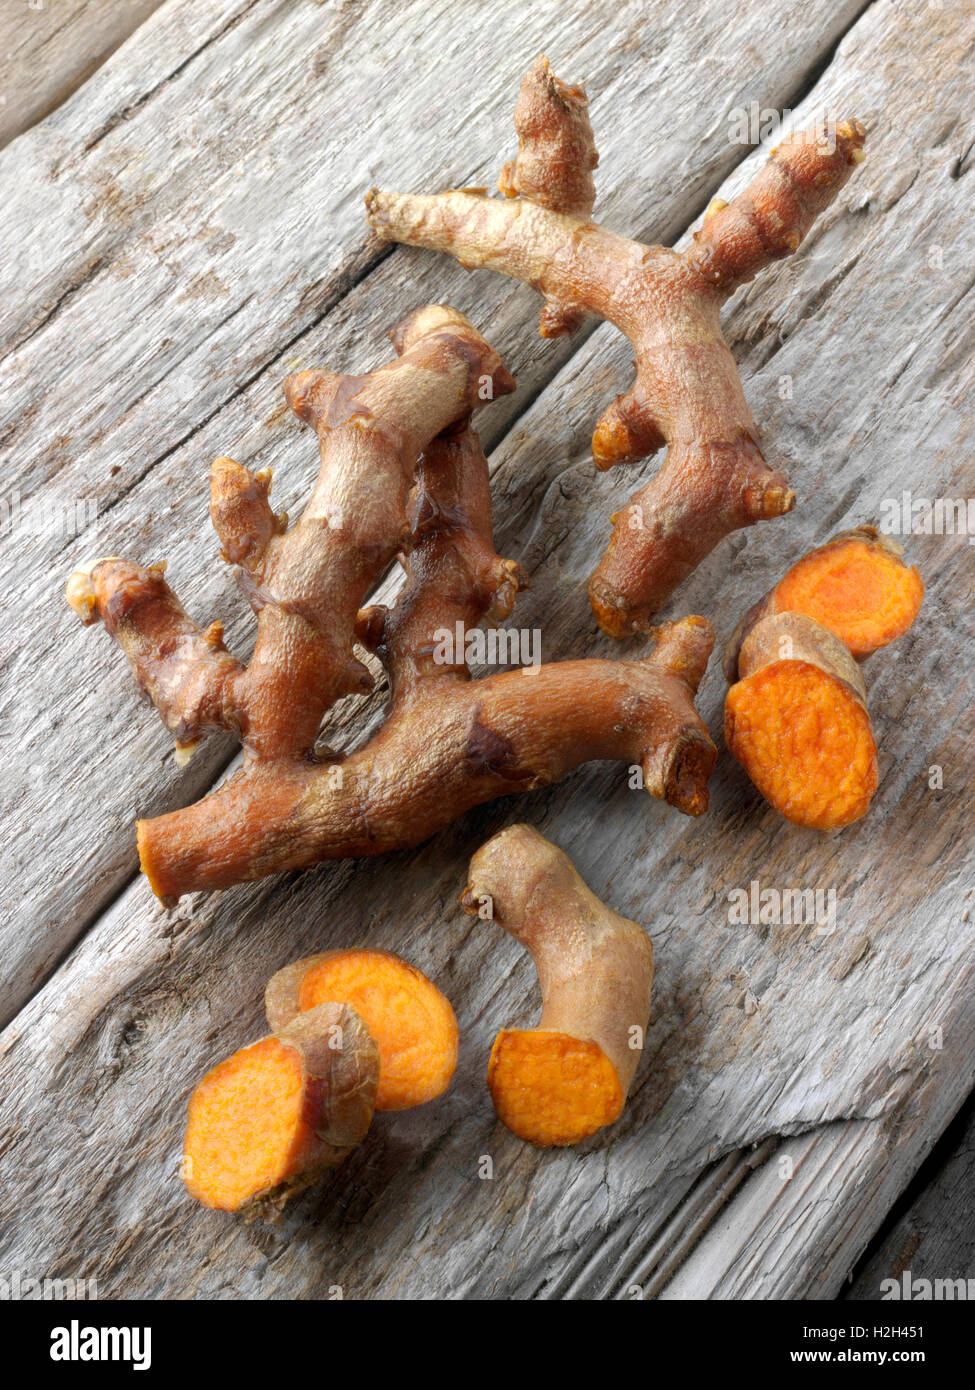 Fresh whole and cut turmeric or tumeric root (Curcuma longa) Stock Photo